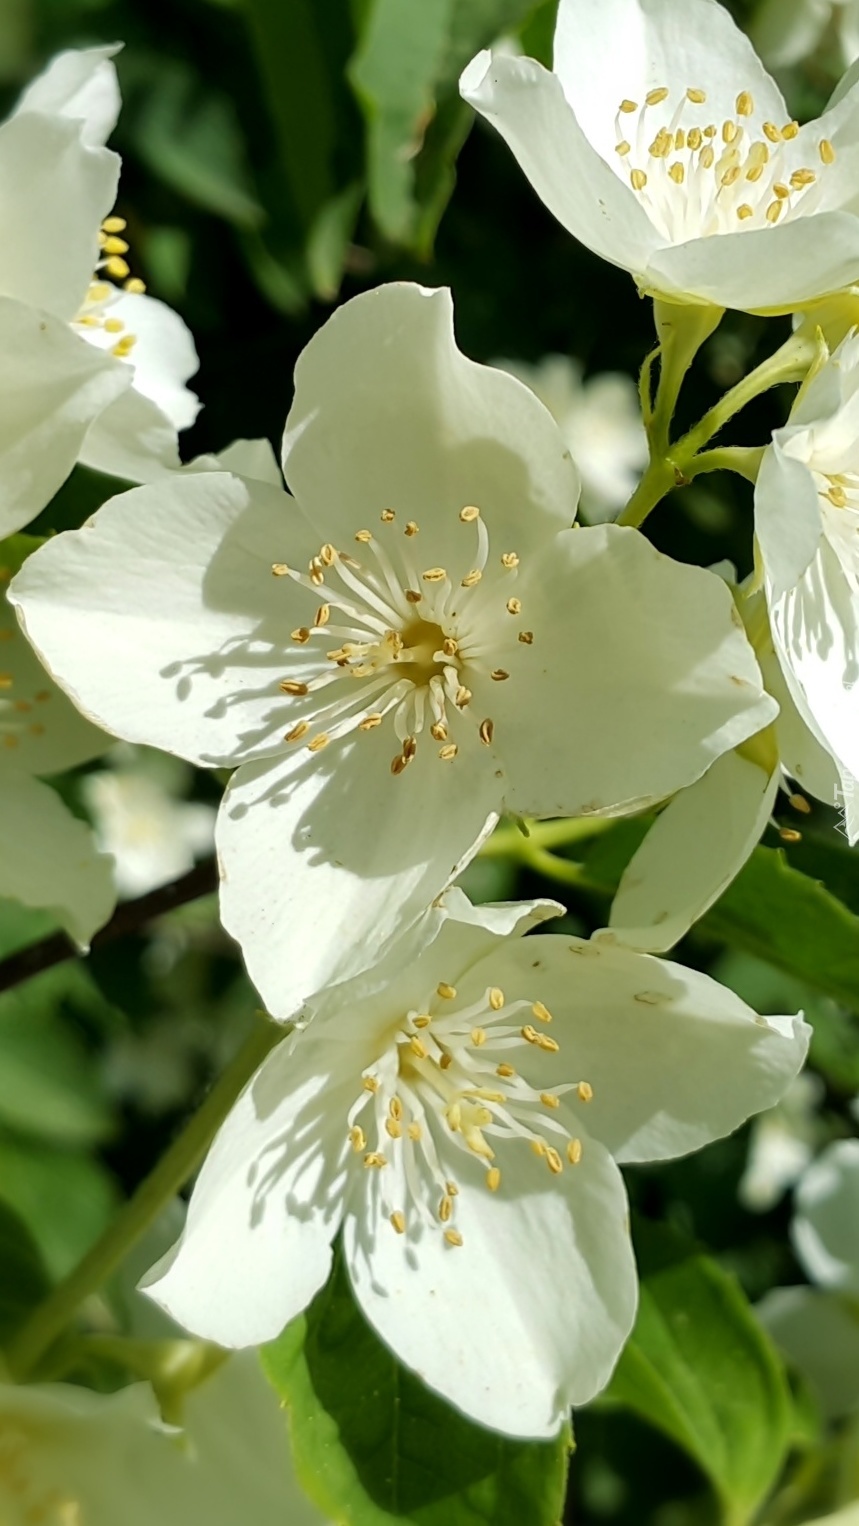 Białe kwiaty jaśminu